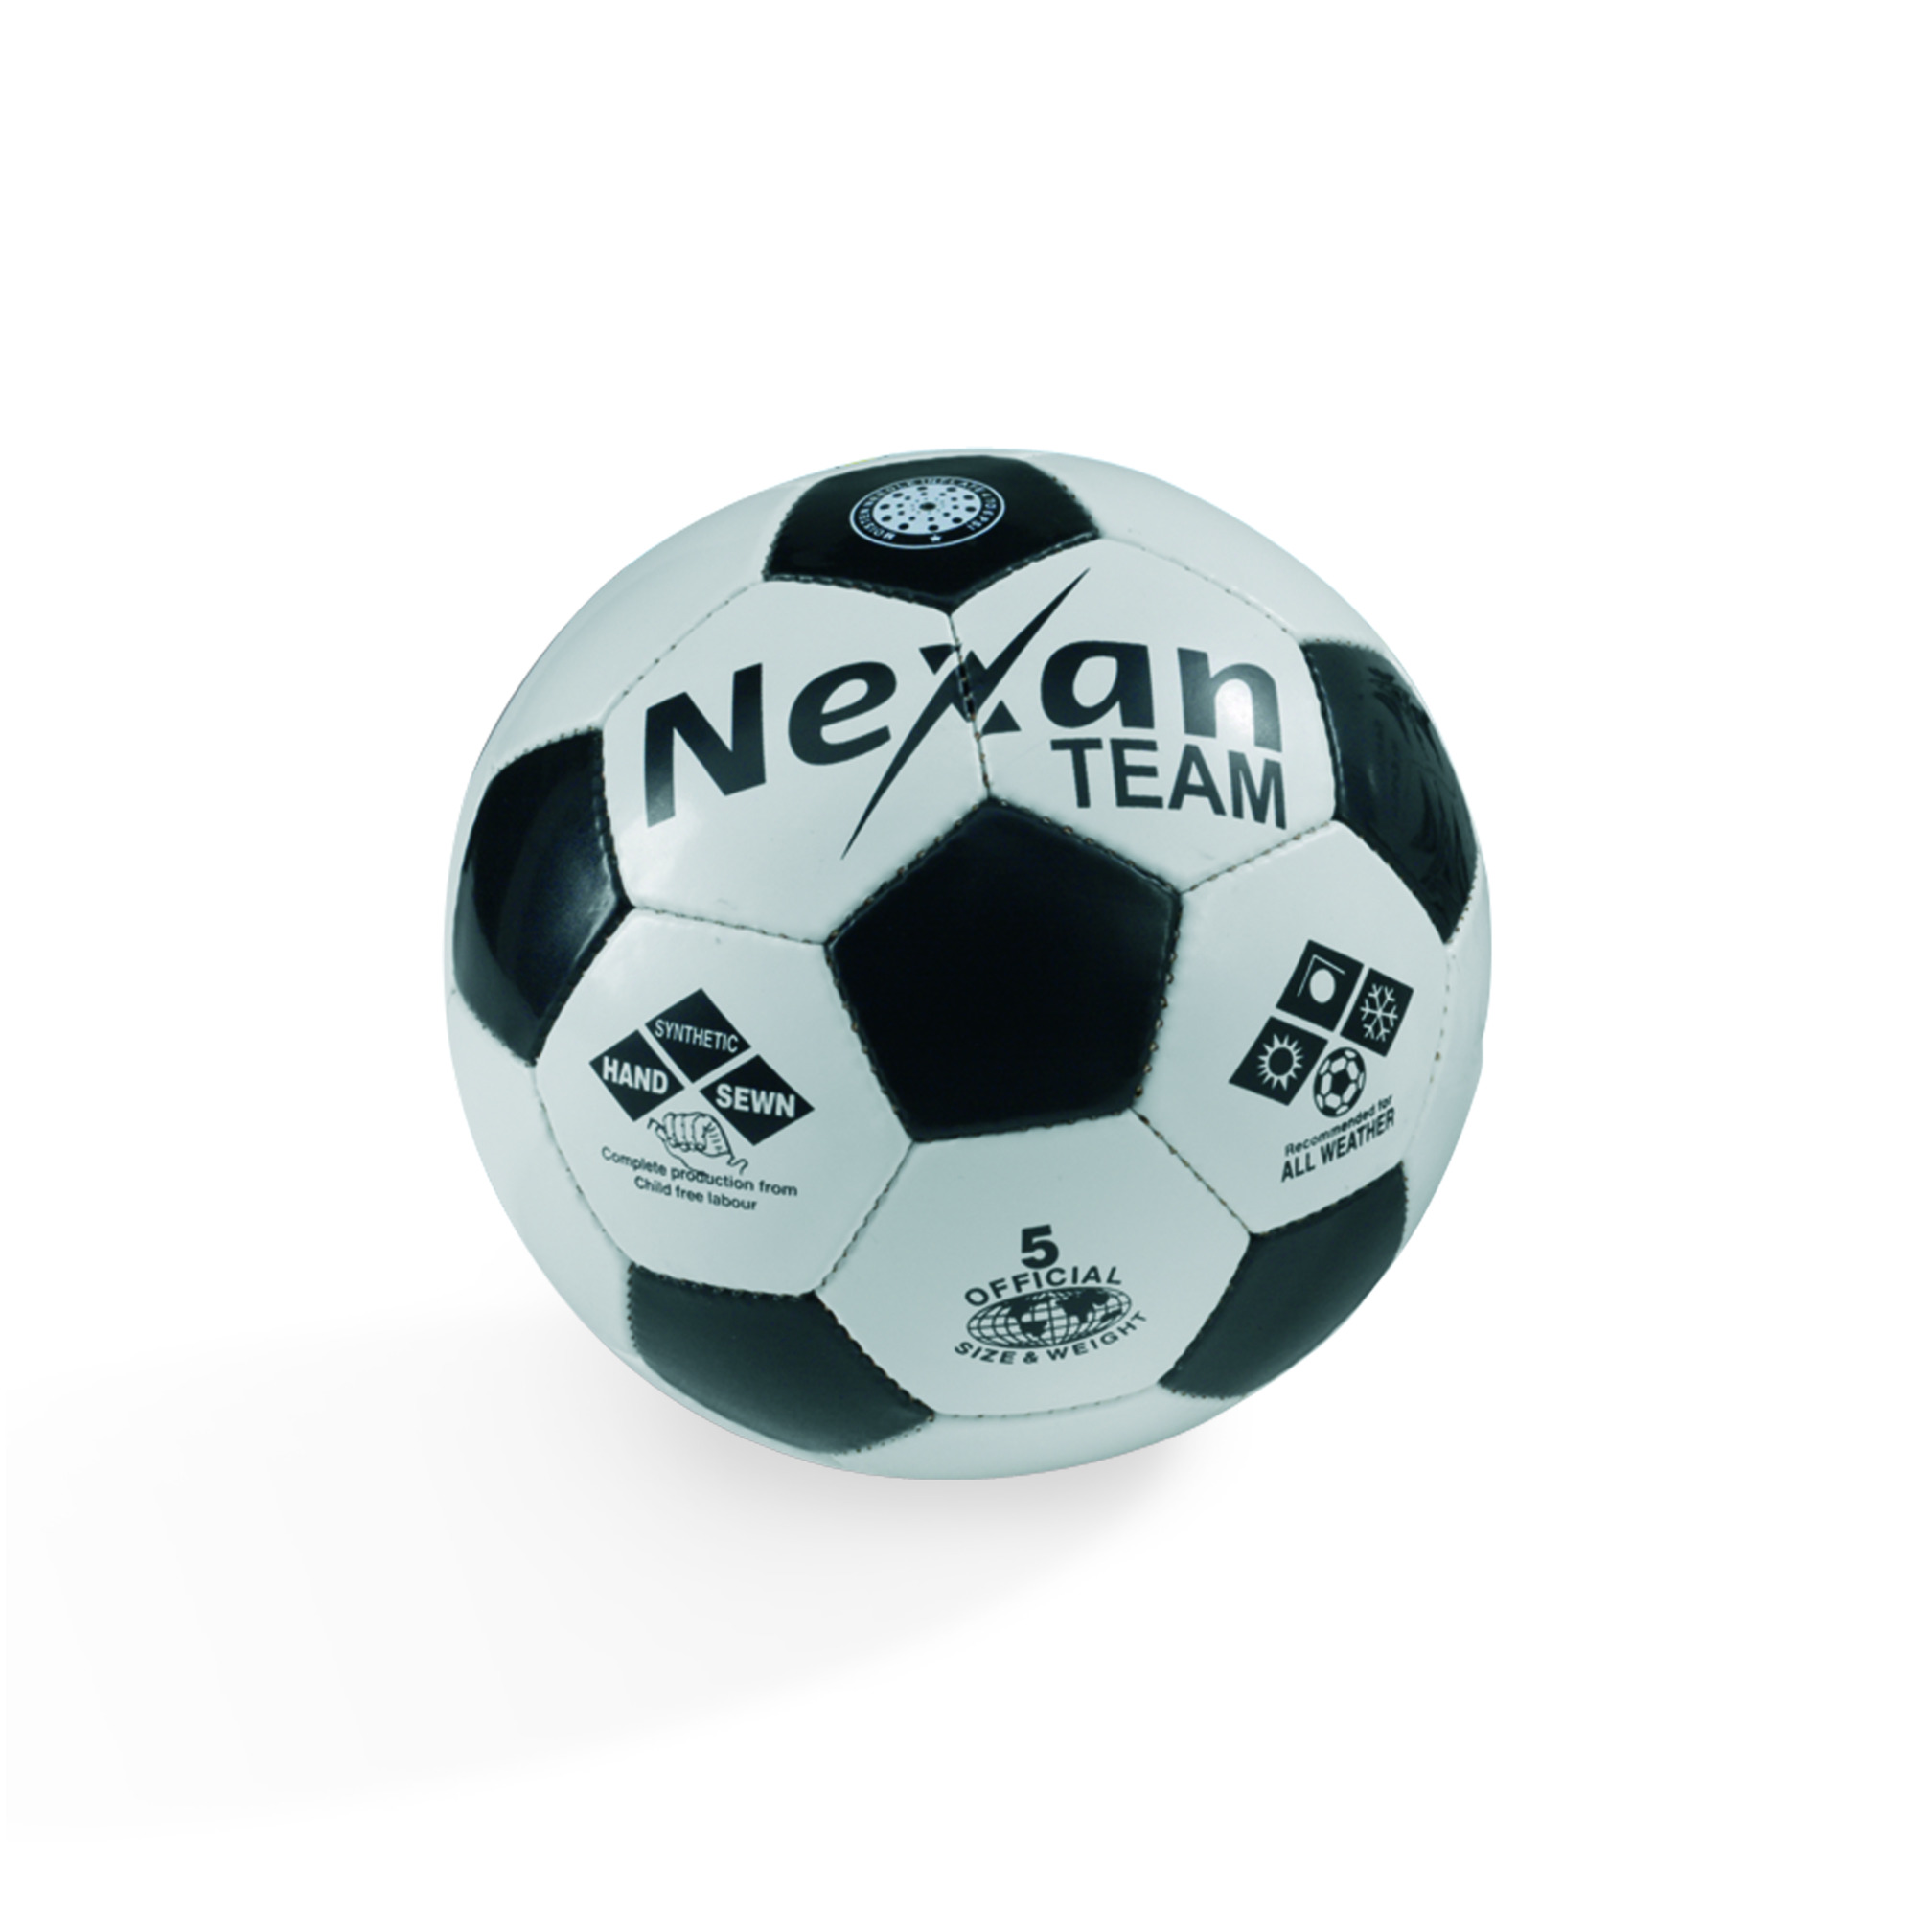 Ballon de football "Nexan" Team, T5